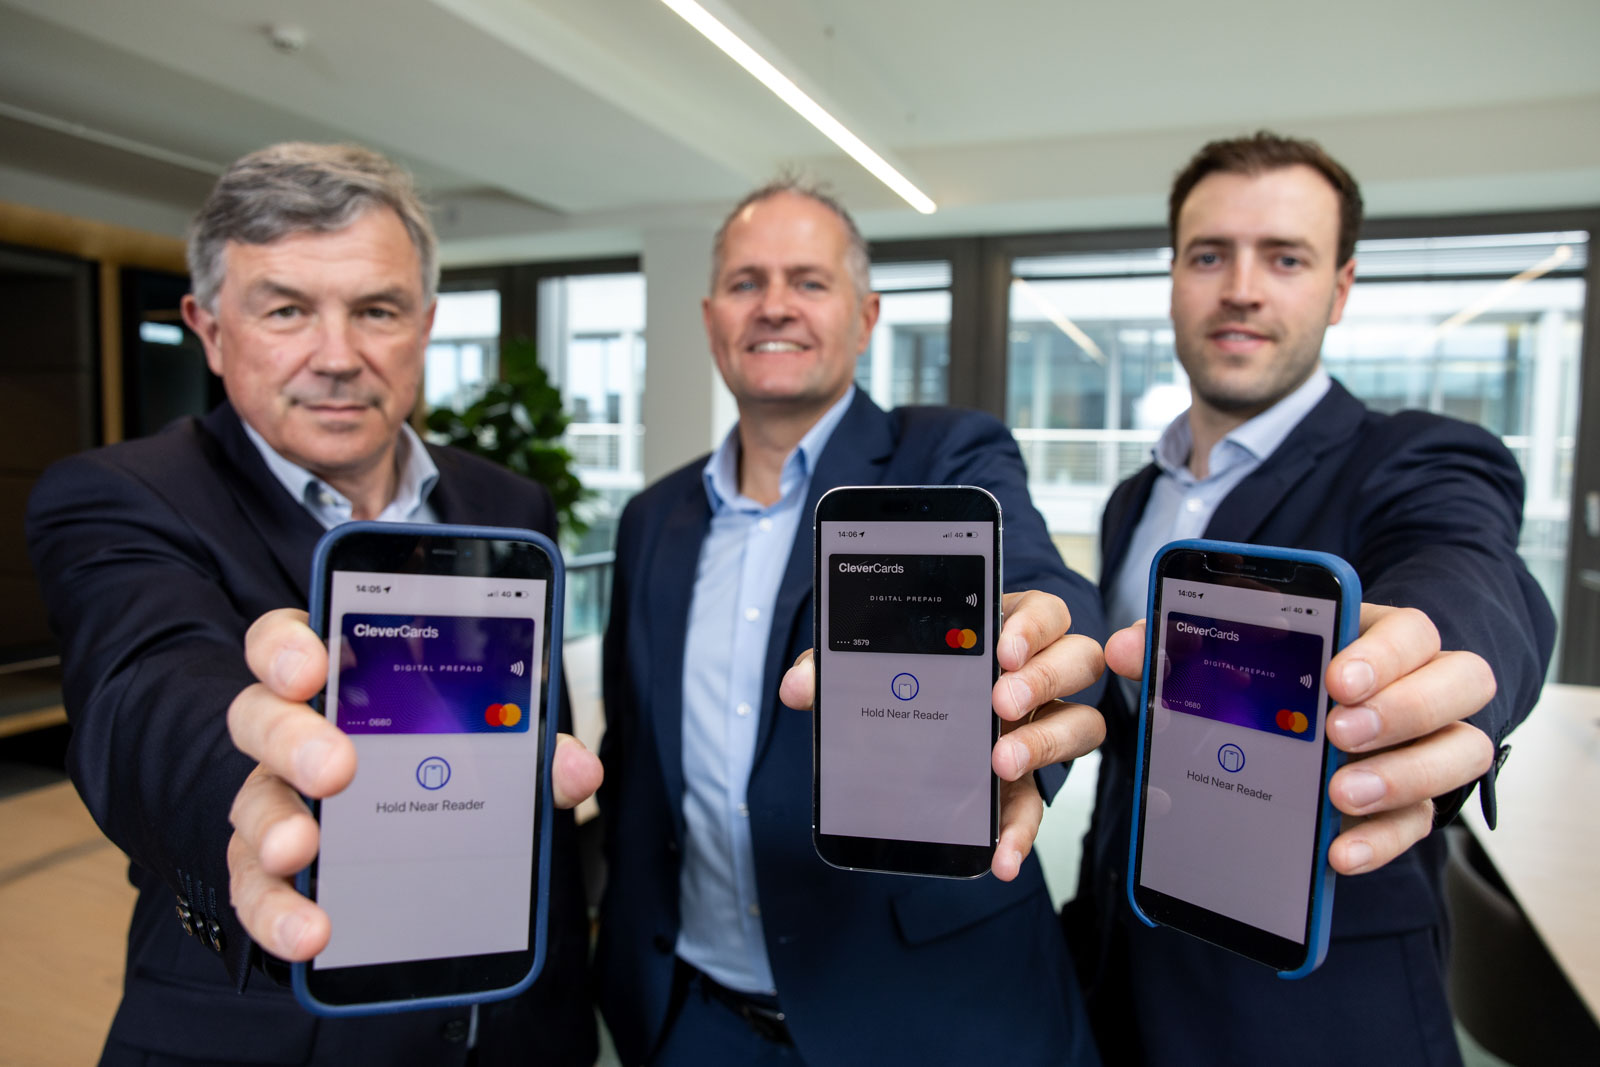 Launch of new app, 3 men in suits, holding phones